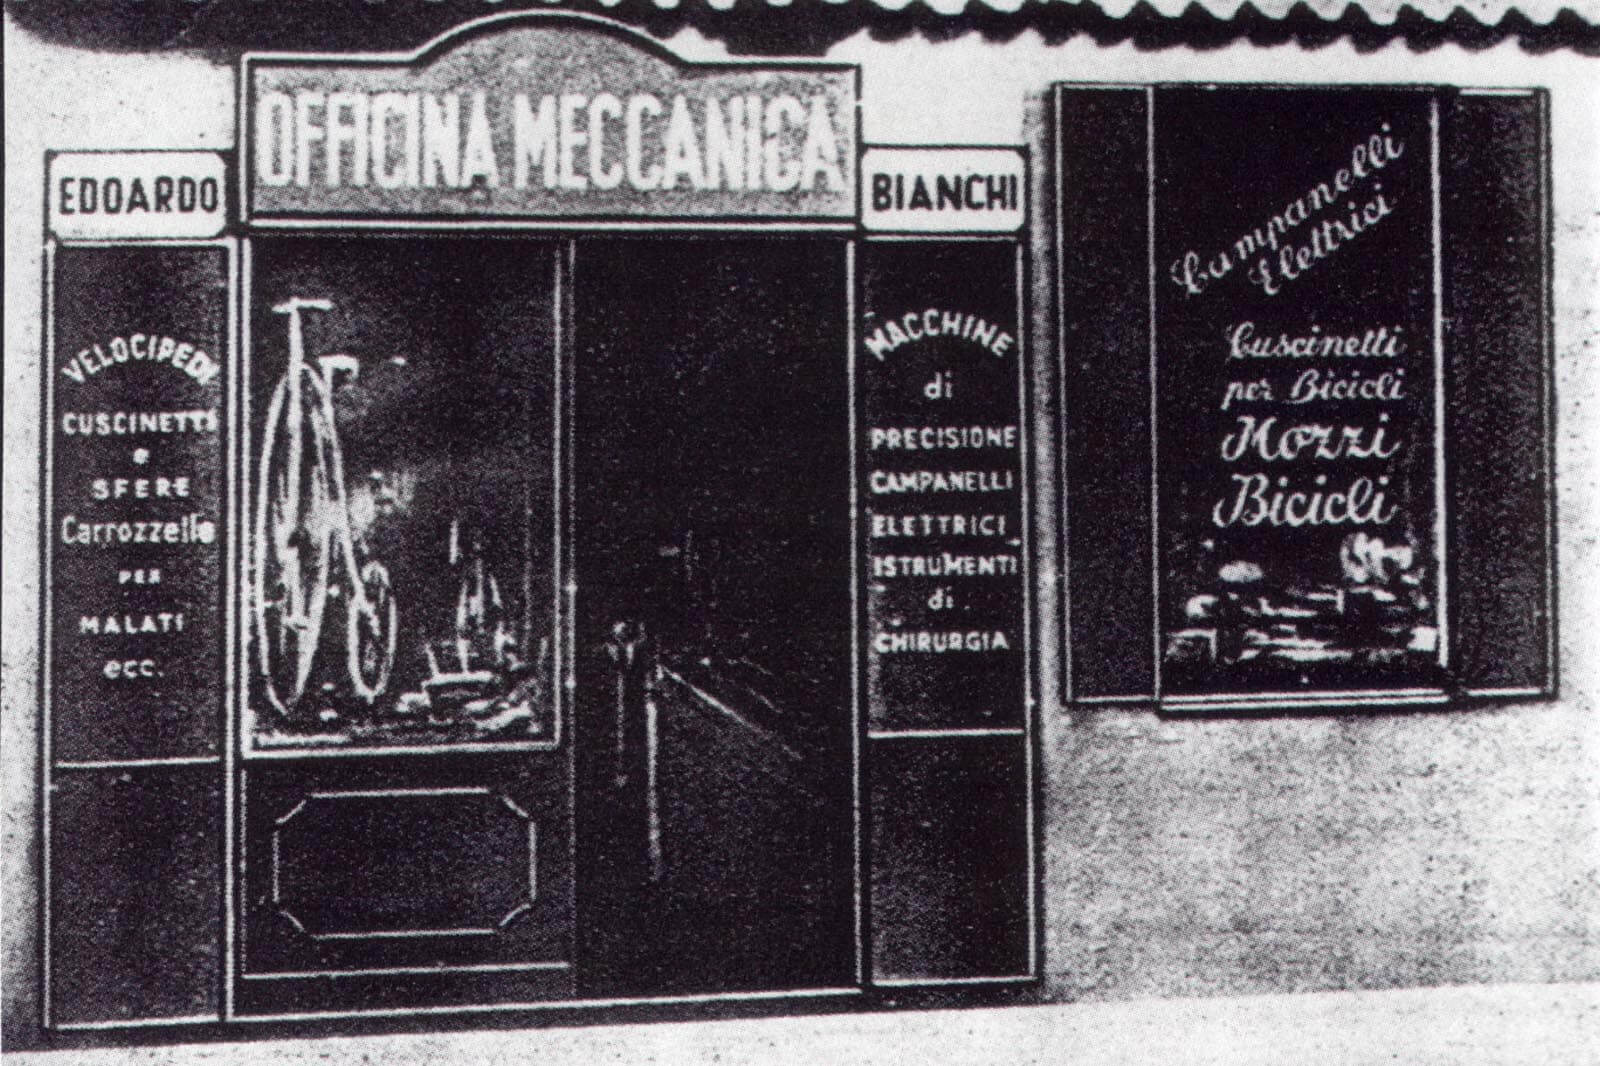 Der erste Bianchi Shop in der Via Nirone 7